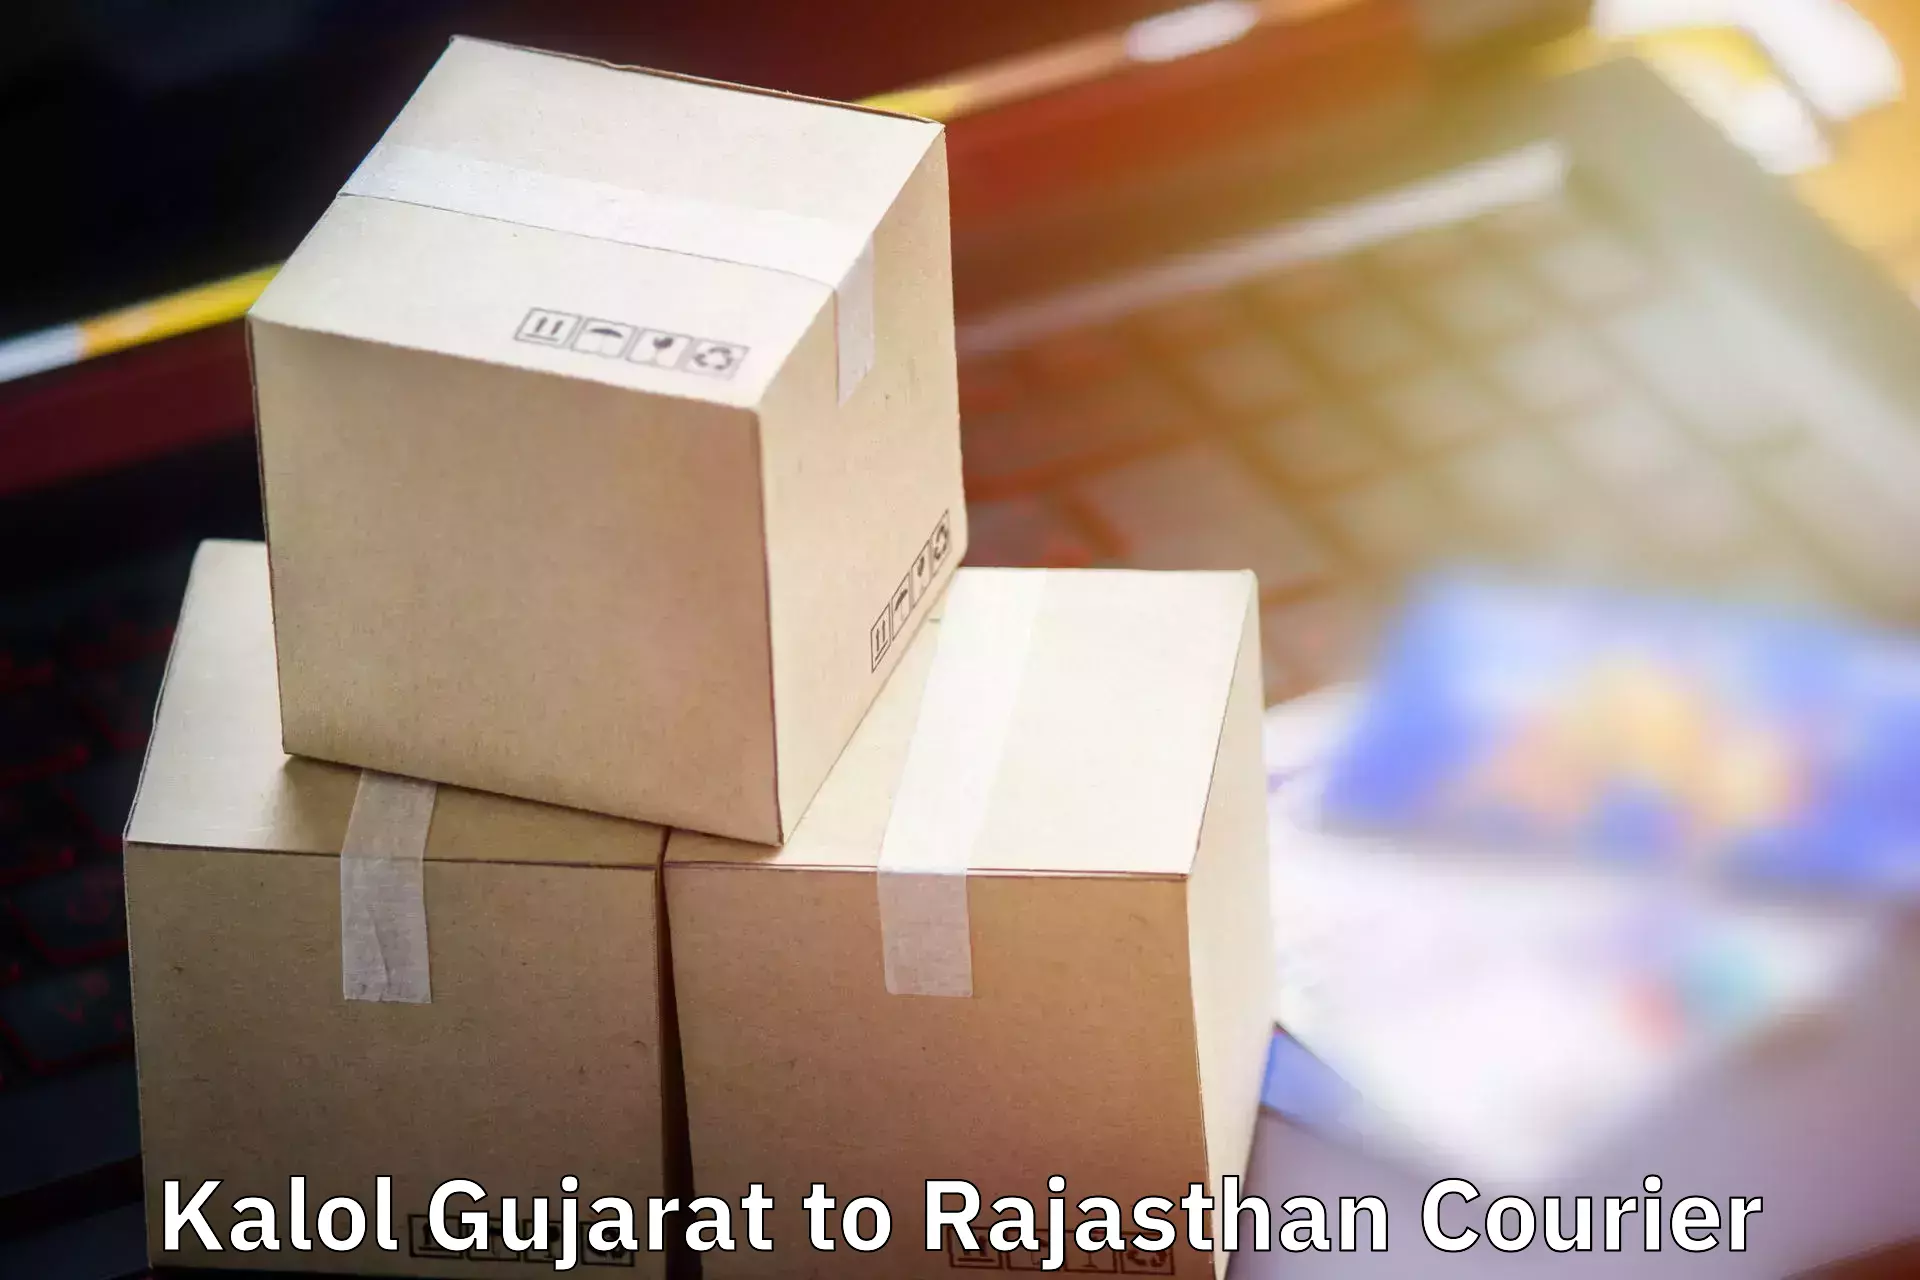 Baggage delivery management Kalol Gujarat to Nokha